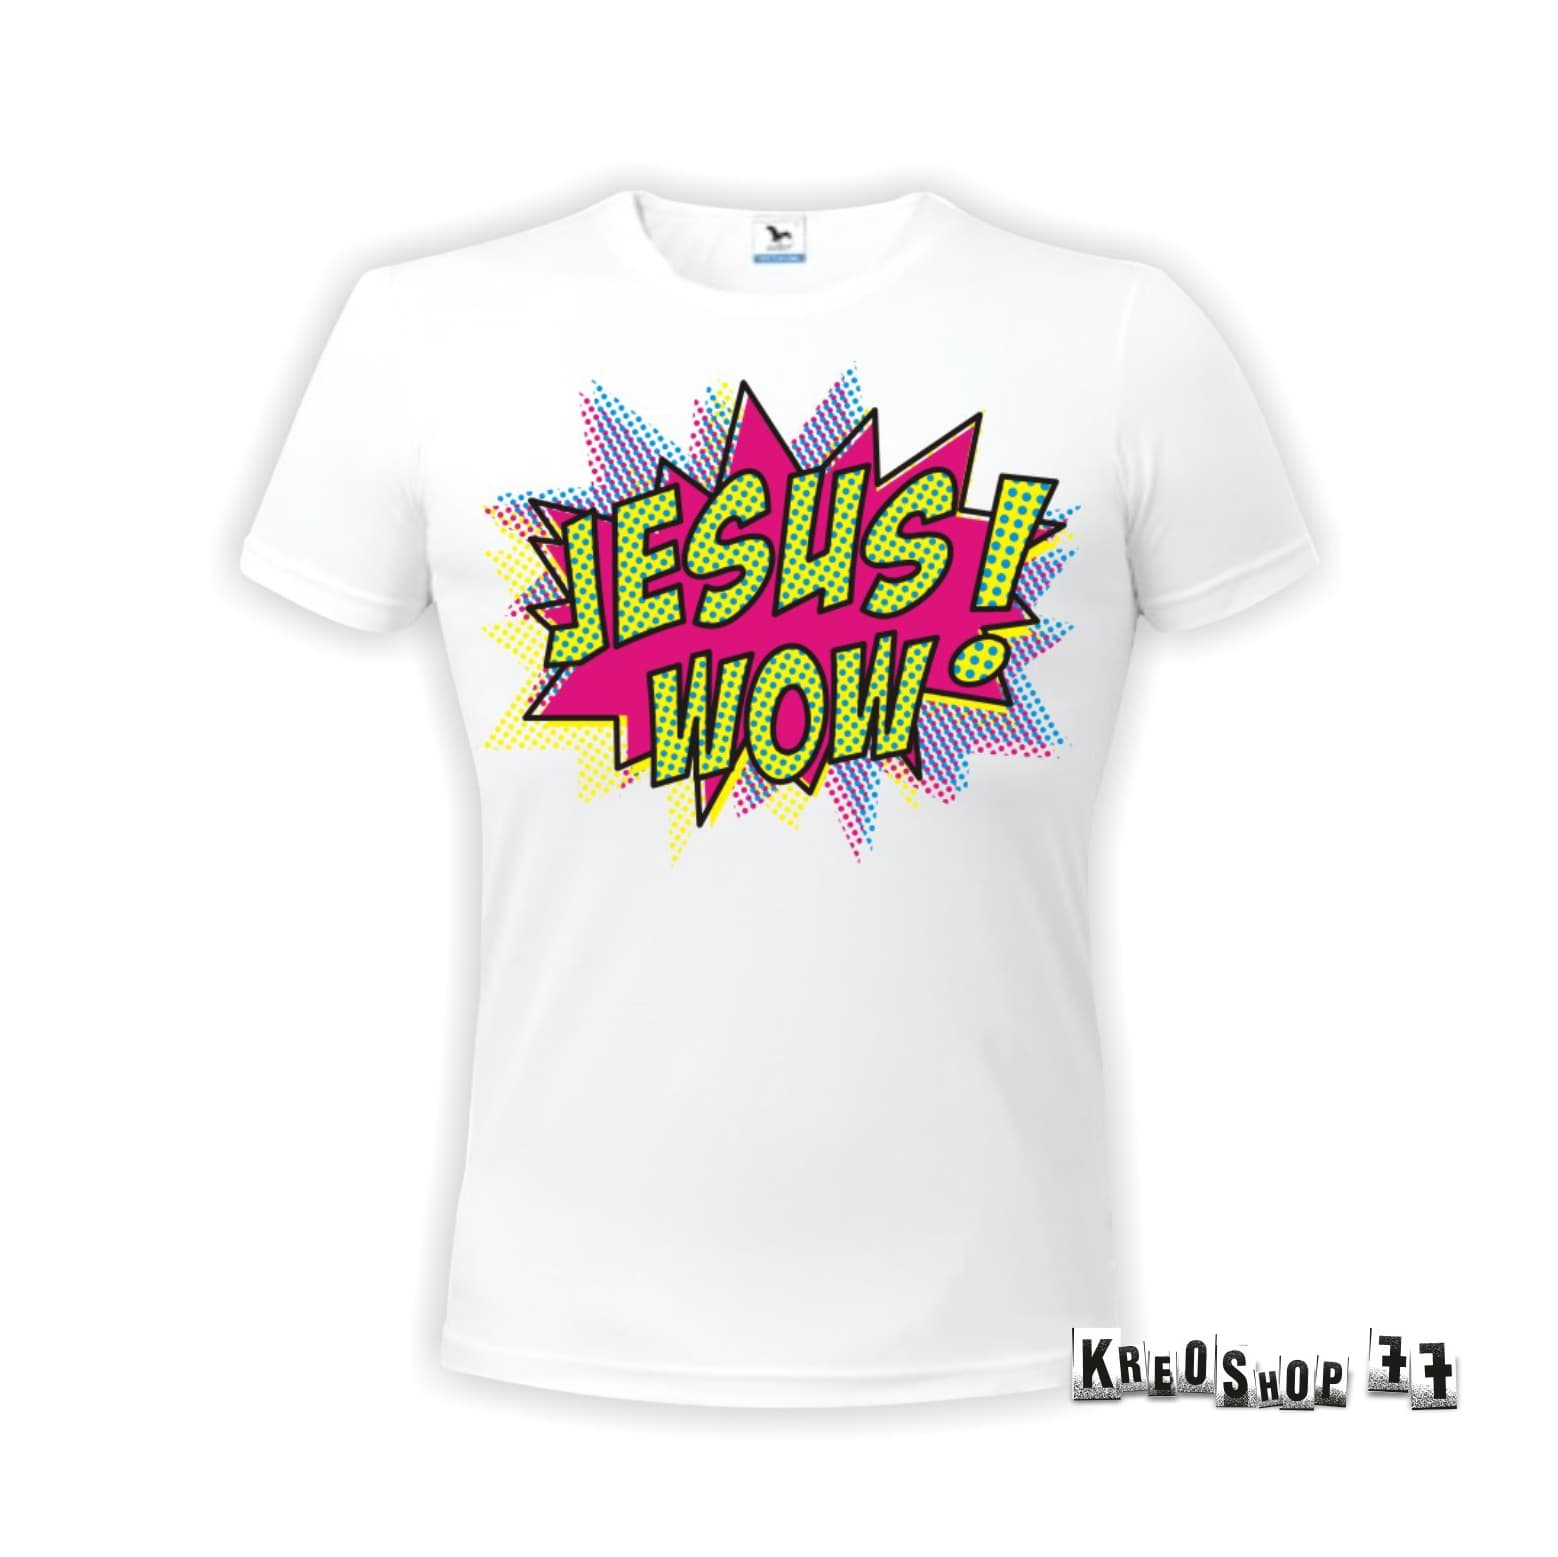 Kresťanské tričko - Jesus wow